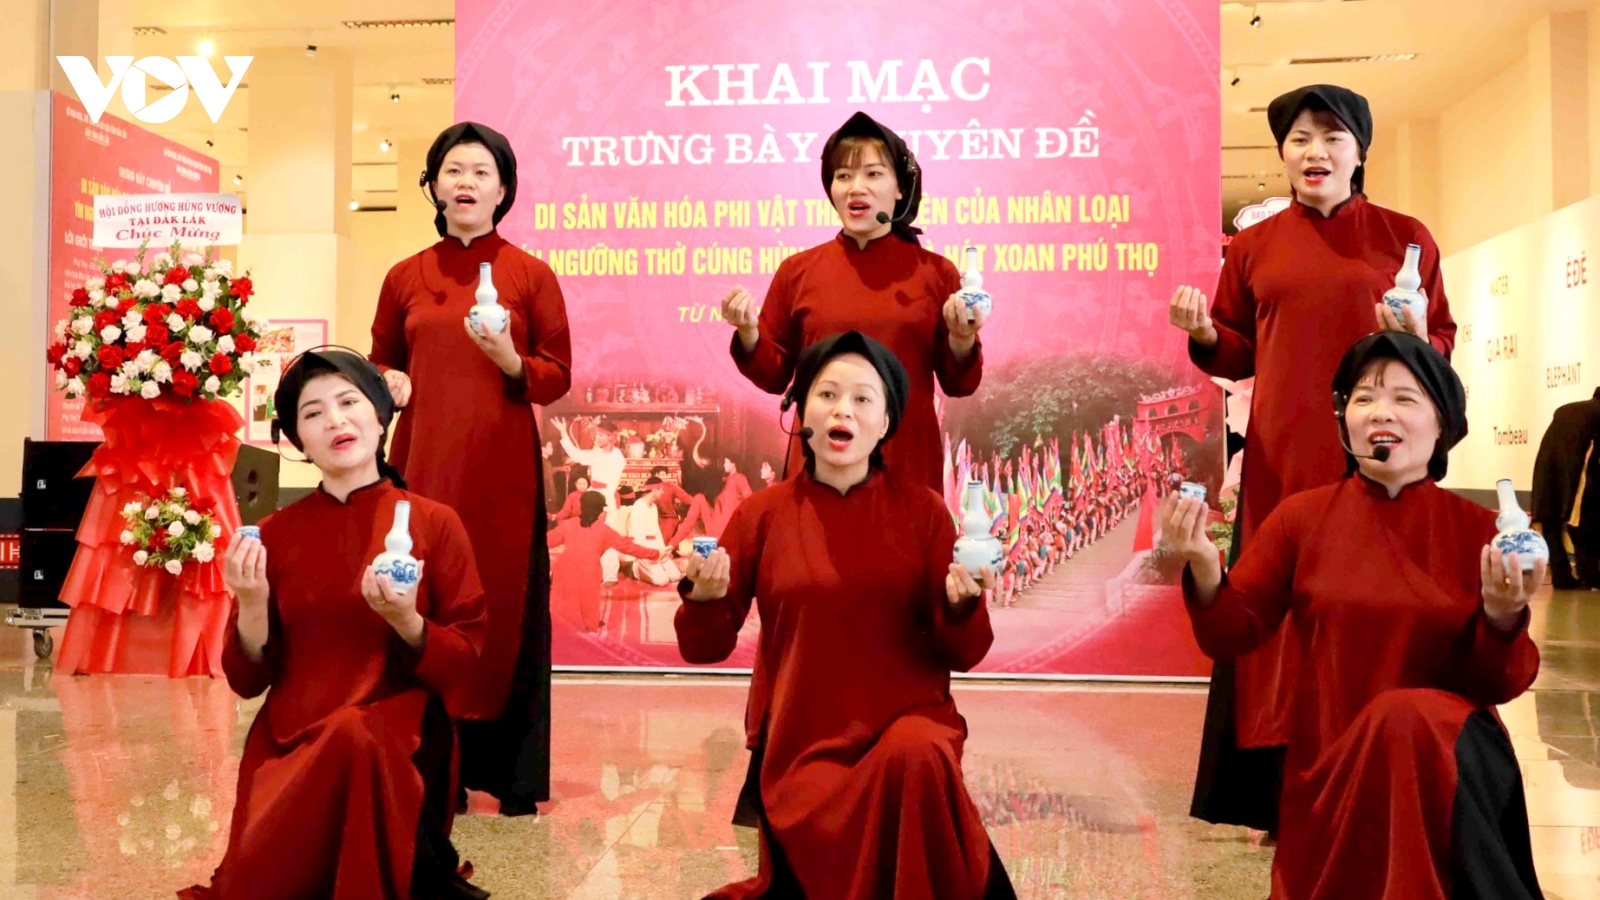 Đắk Lắk trưng bày chuyên đề Tín ngưỡng thờ cúng Hùng Vương và hát Xoan Phú Thọ